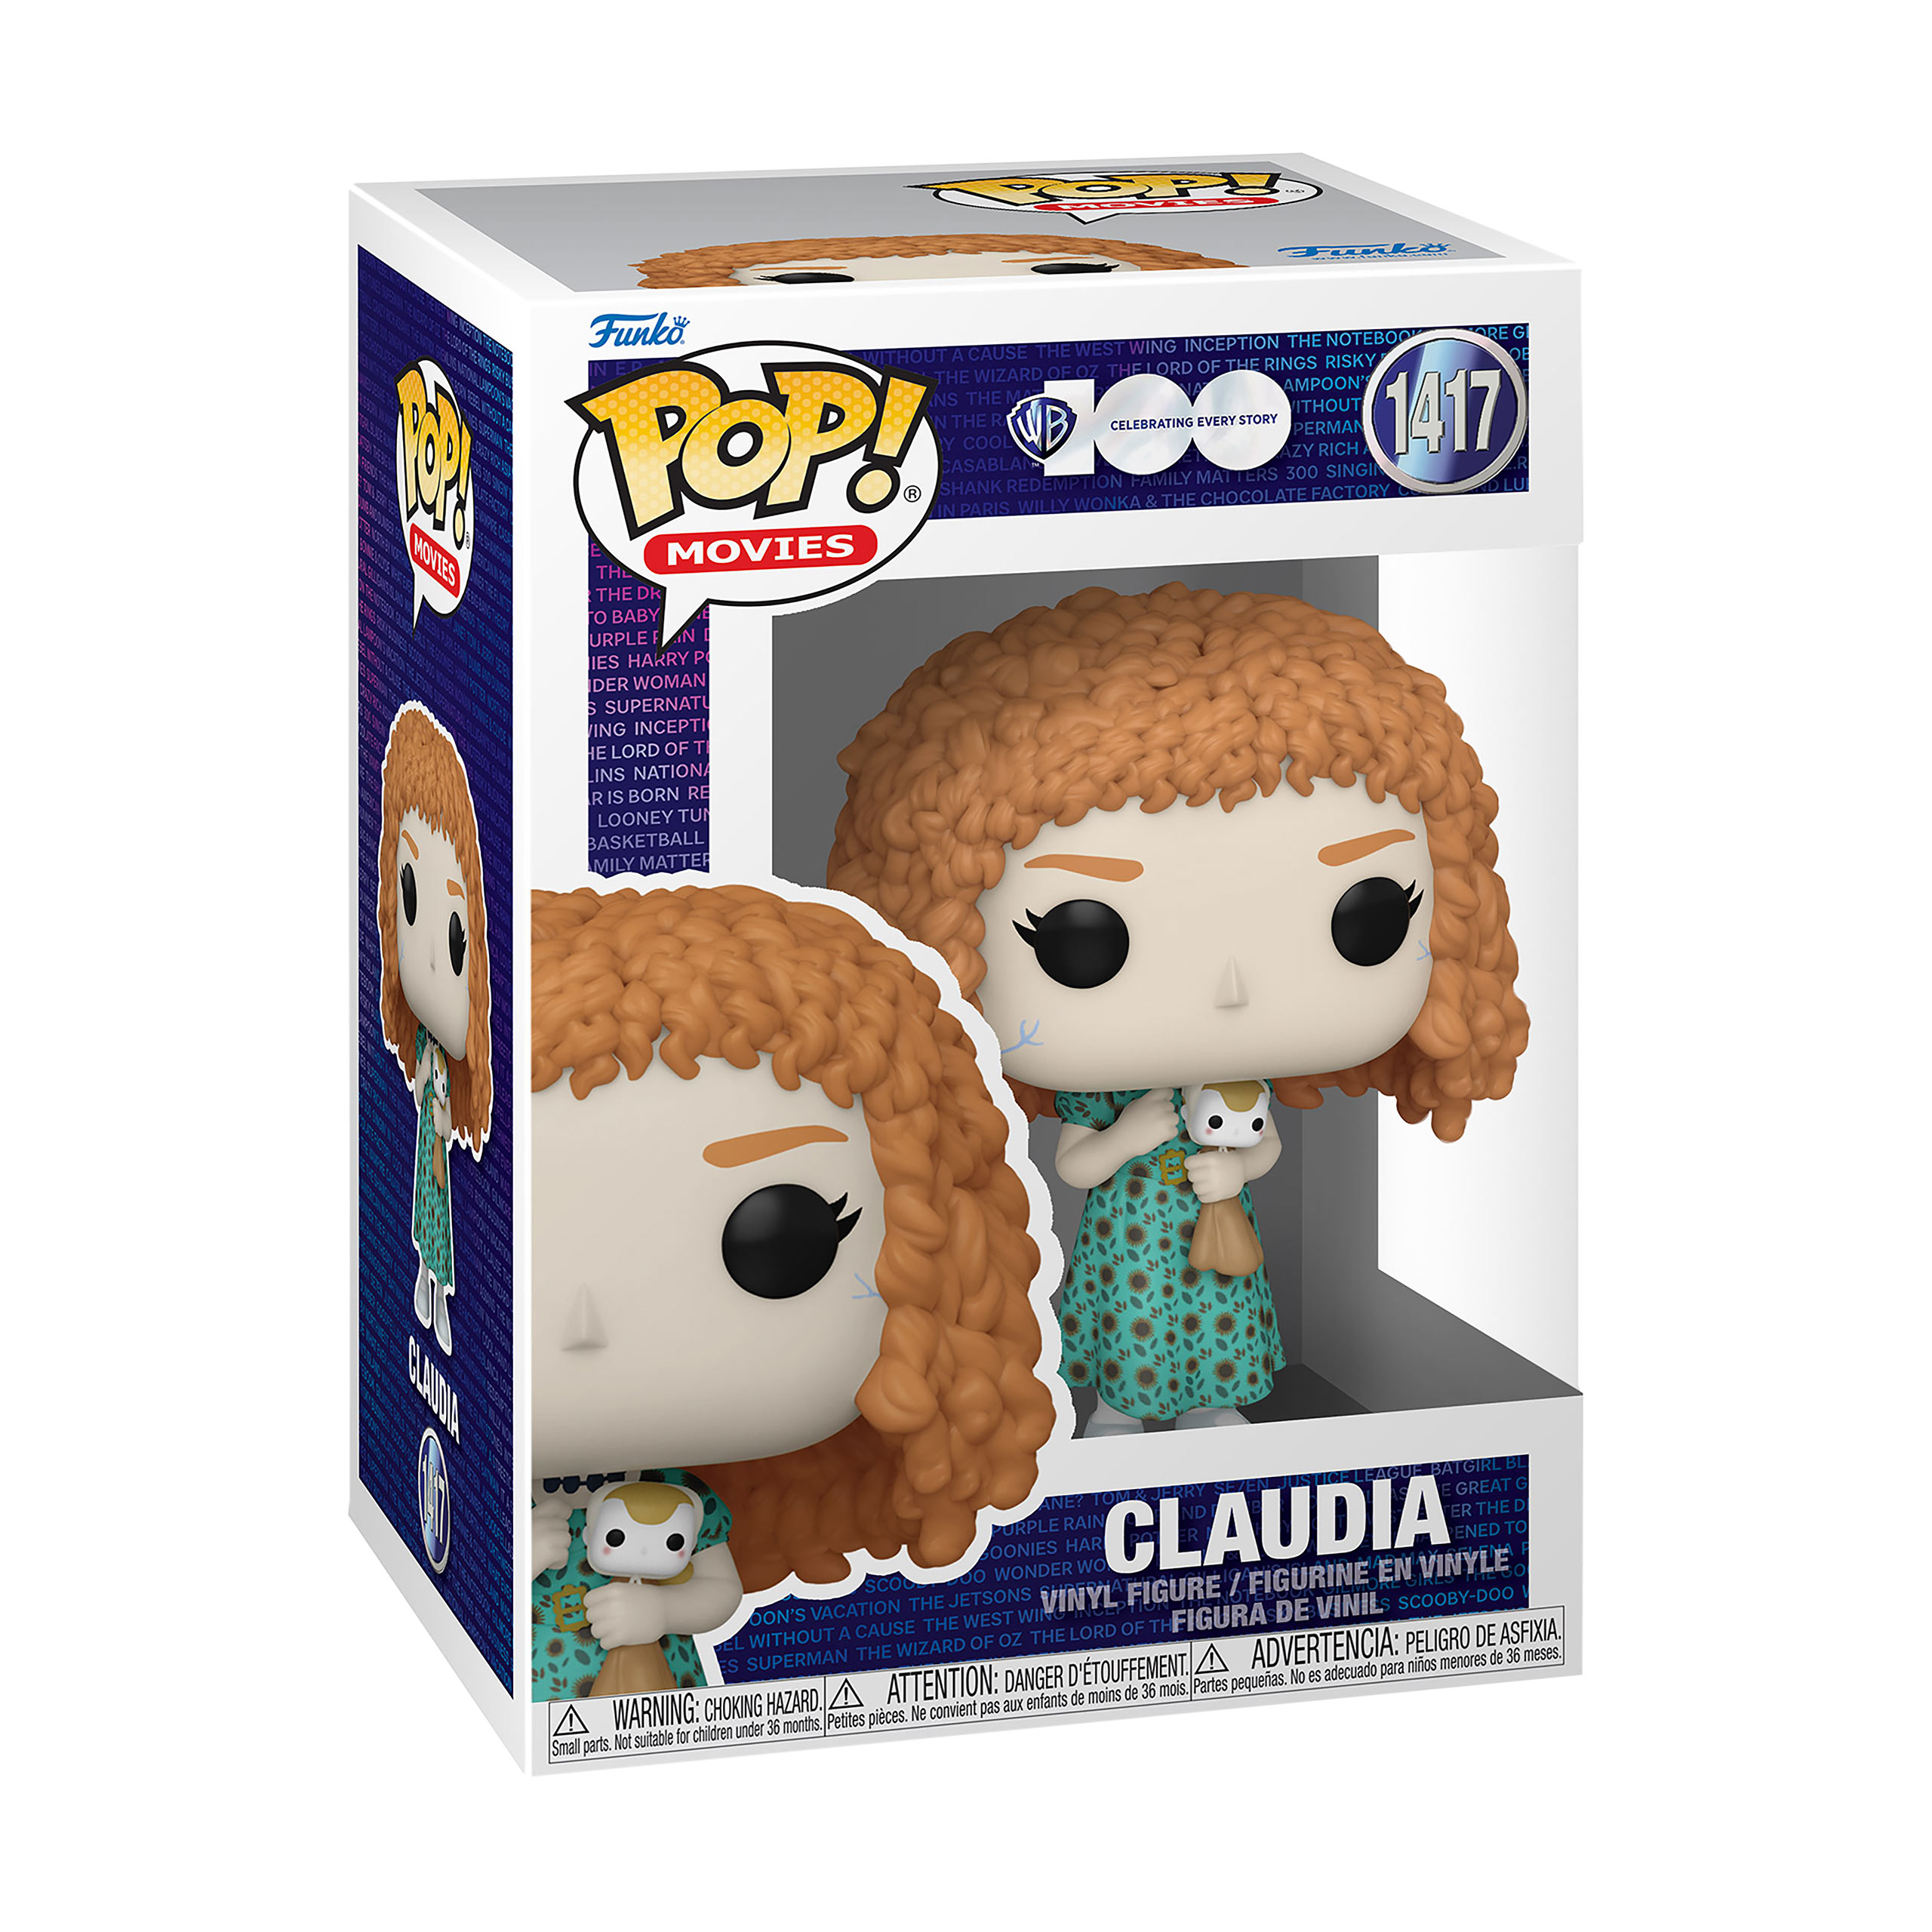 Entretien avec un vampire - Figurine Funko Pop Claudia